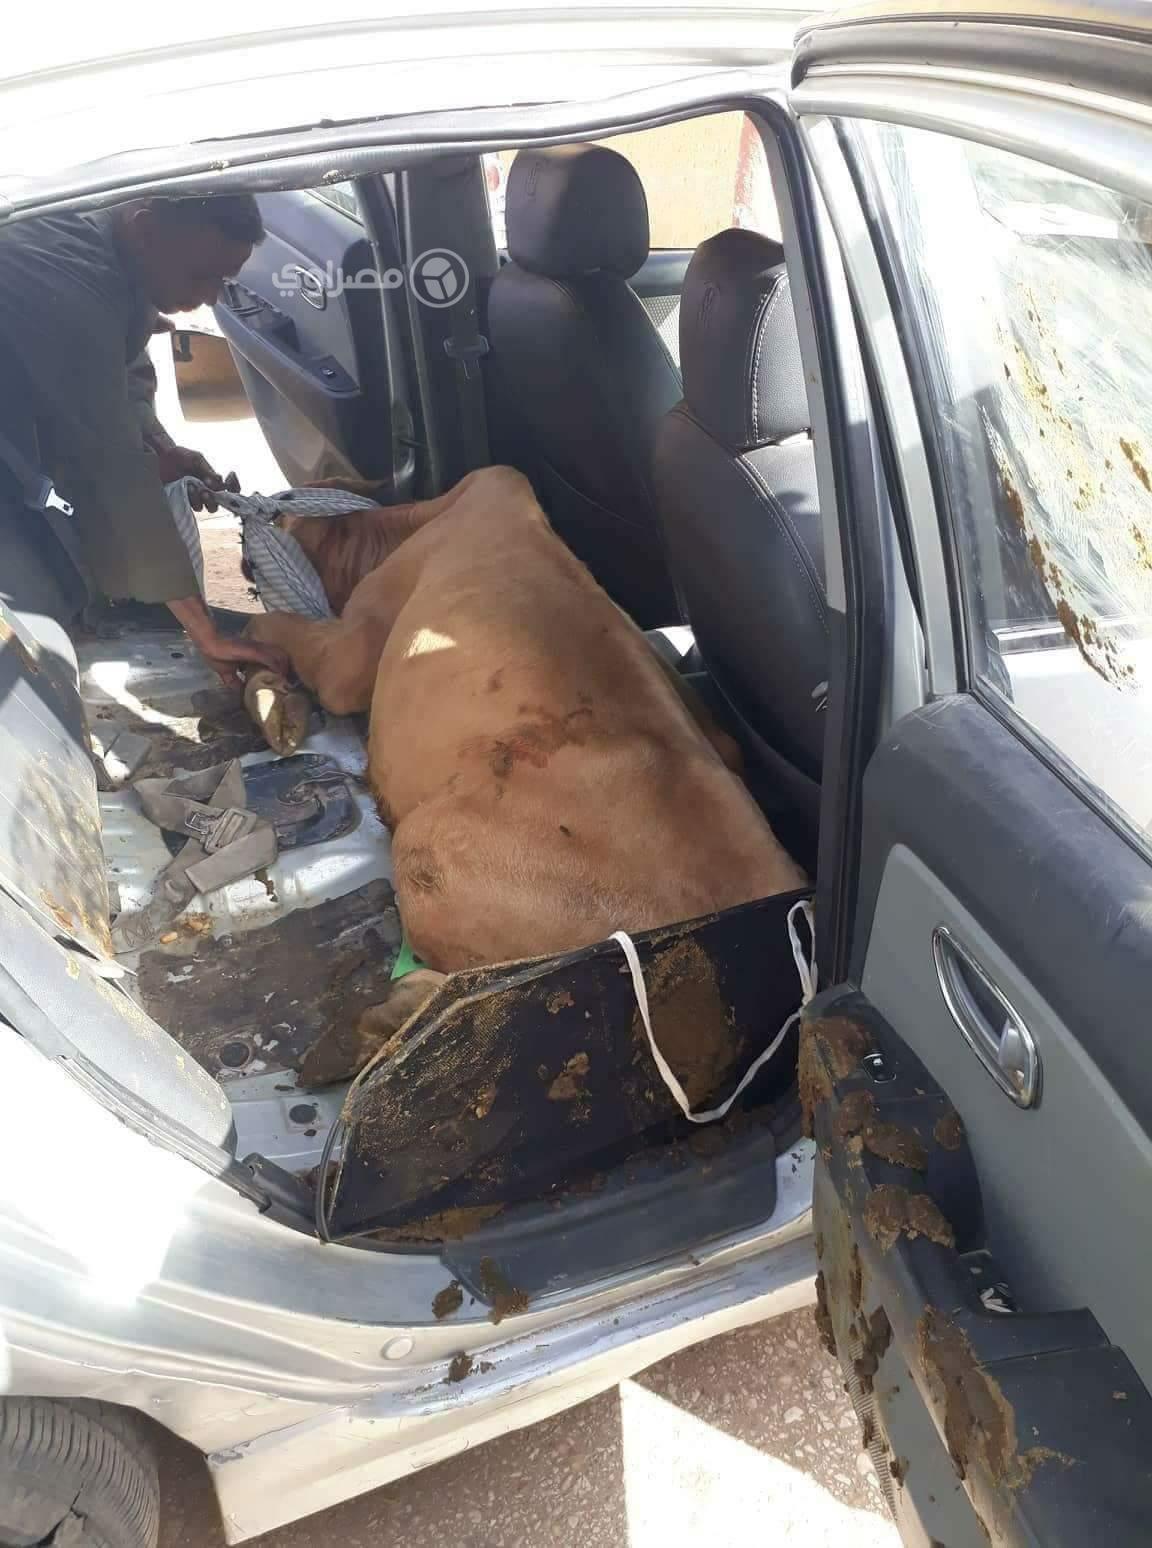 البقرة مستلقية داخل السيارة                                                                                                                                                                             